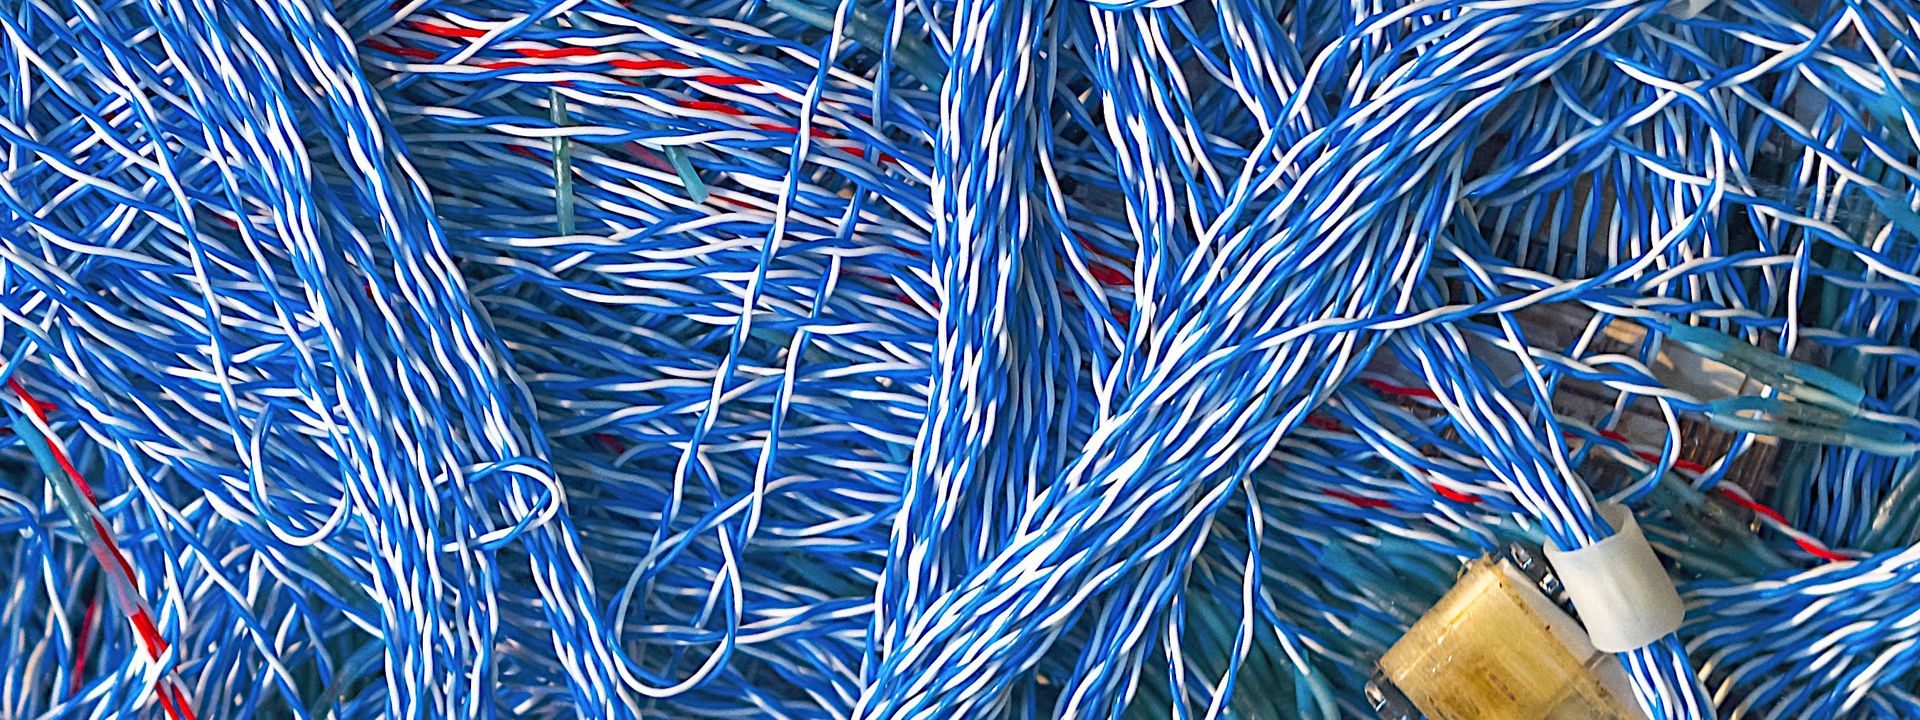 Ein Gewirr aus vielen blau-weißen Kabeln und Kabelsträngen. Dazwischen einige rote Kabel.